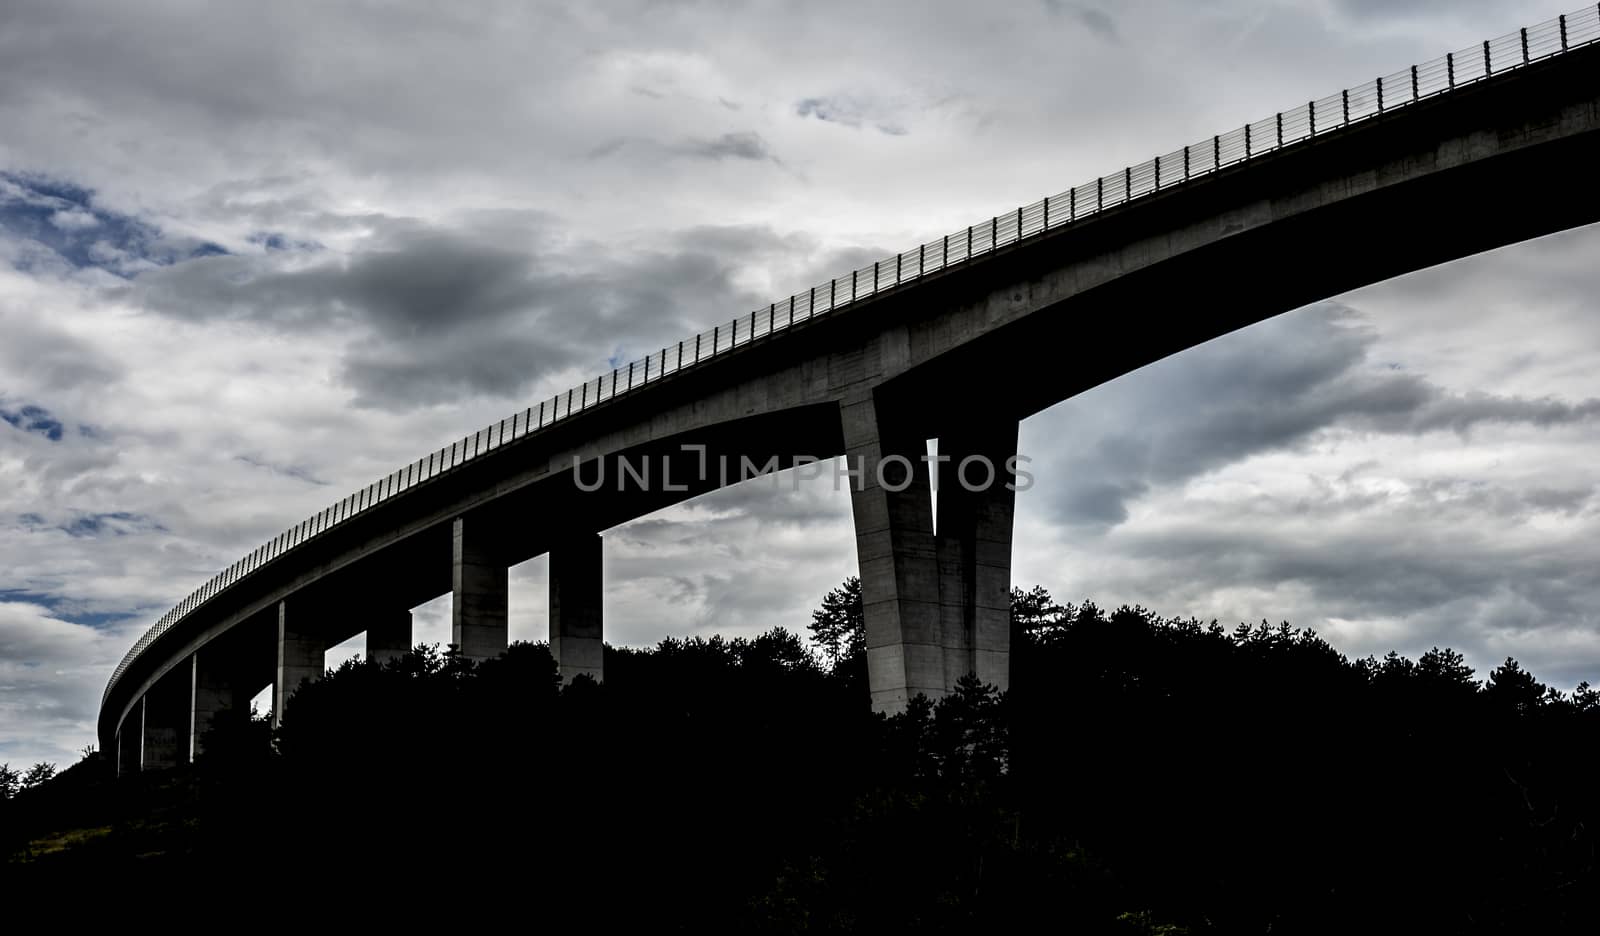 Dark highway overpass by photosampler